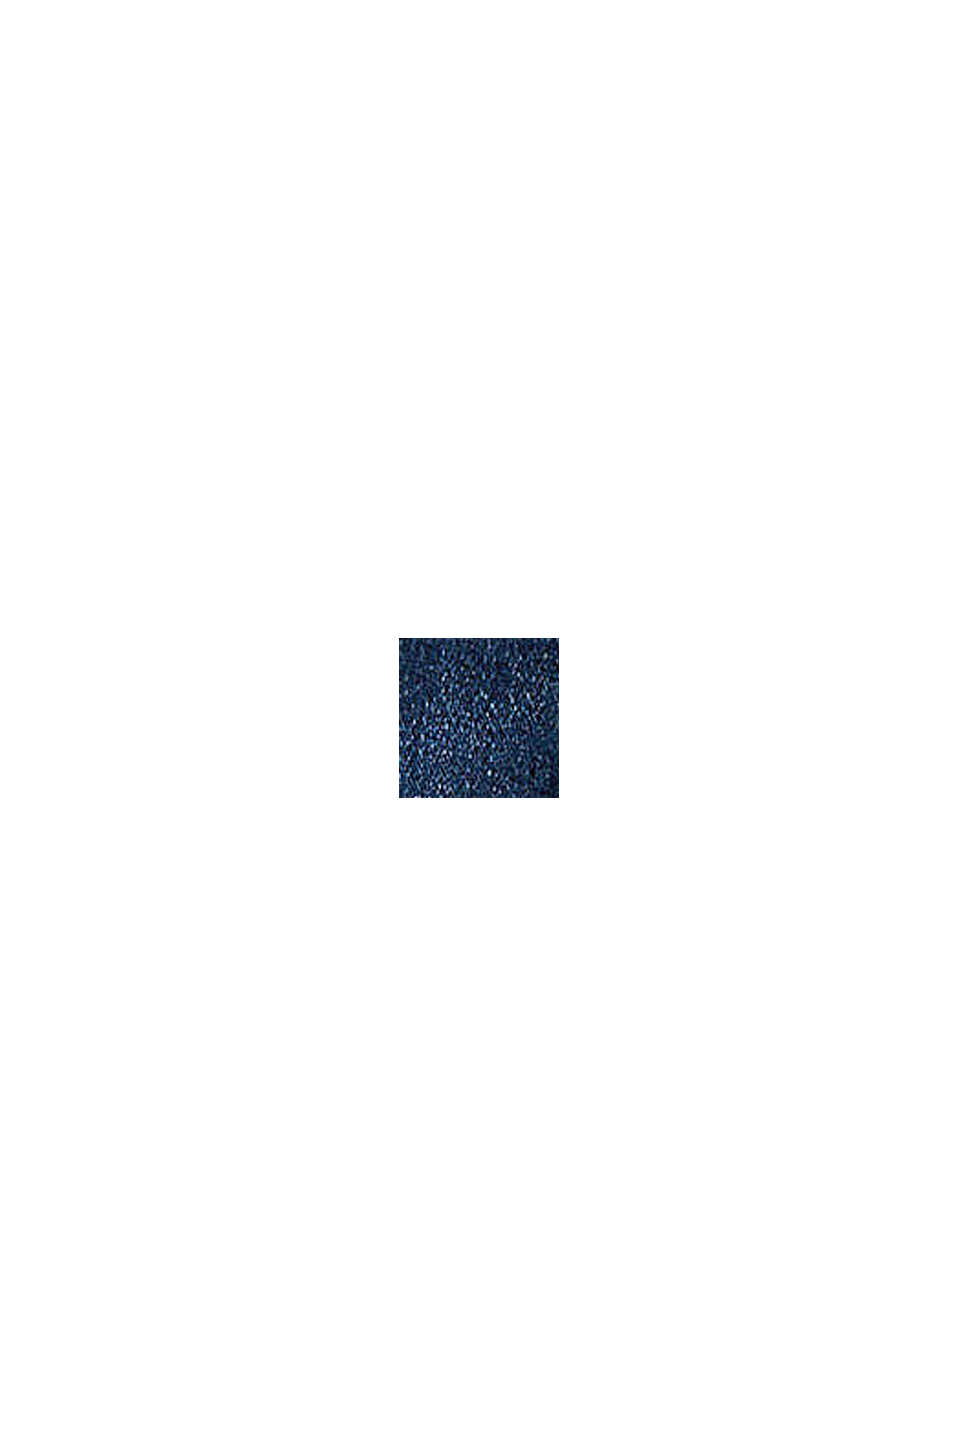 Dżinsowa kurtka w stylu used, BLUE DARK WASHED, swatch